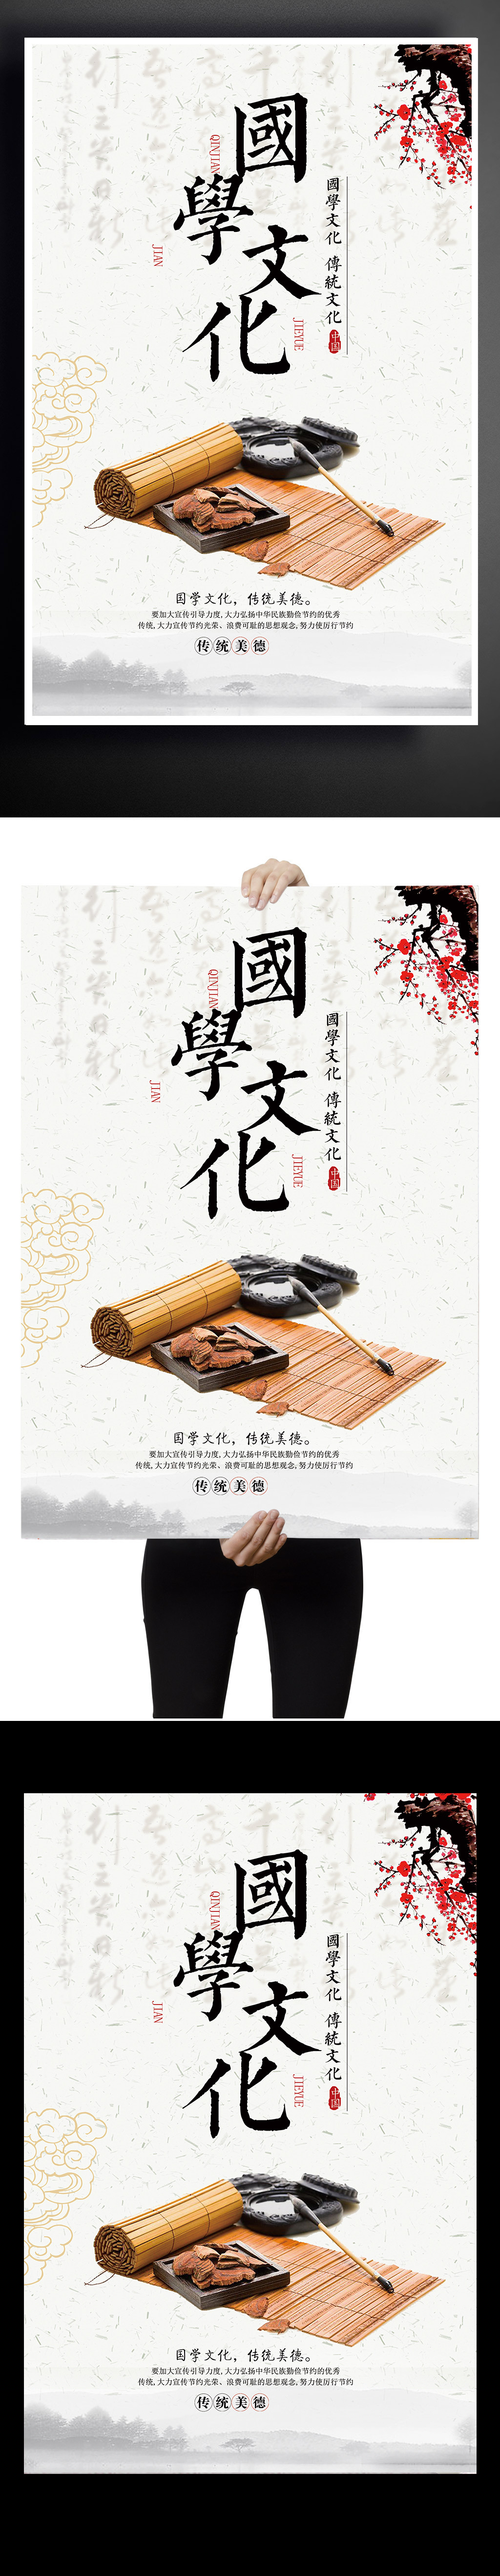 国学文化中国风海报下载图片